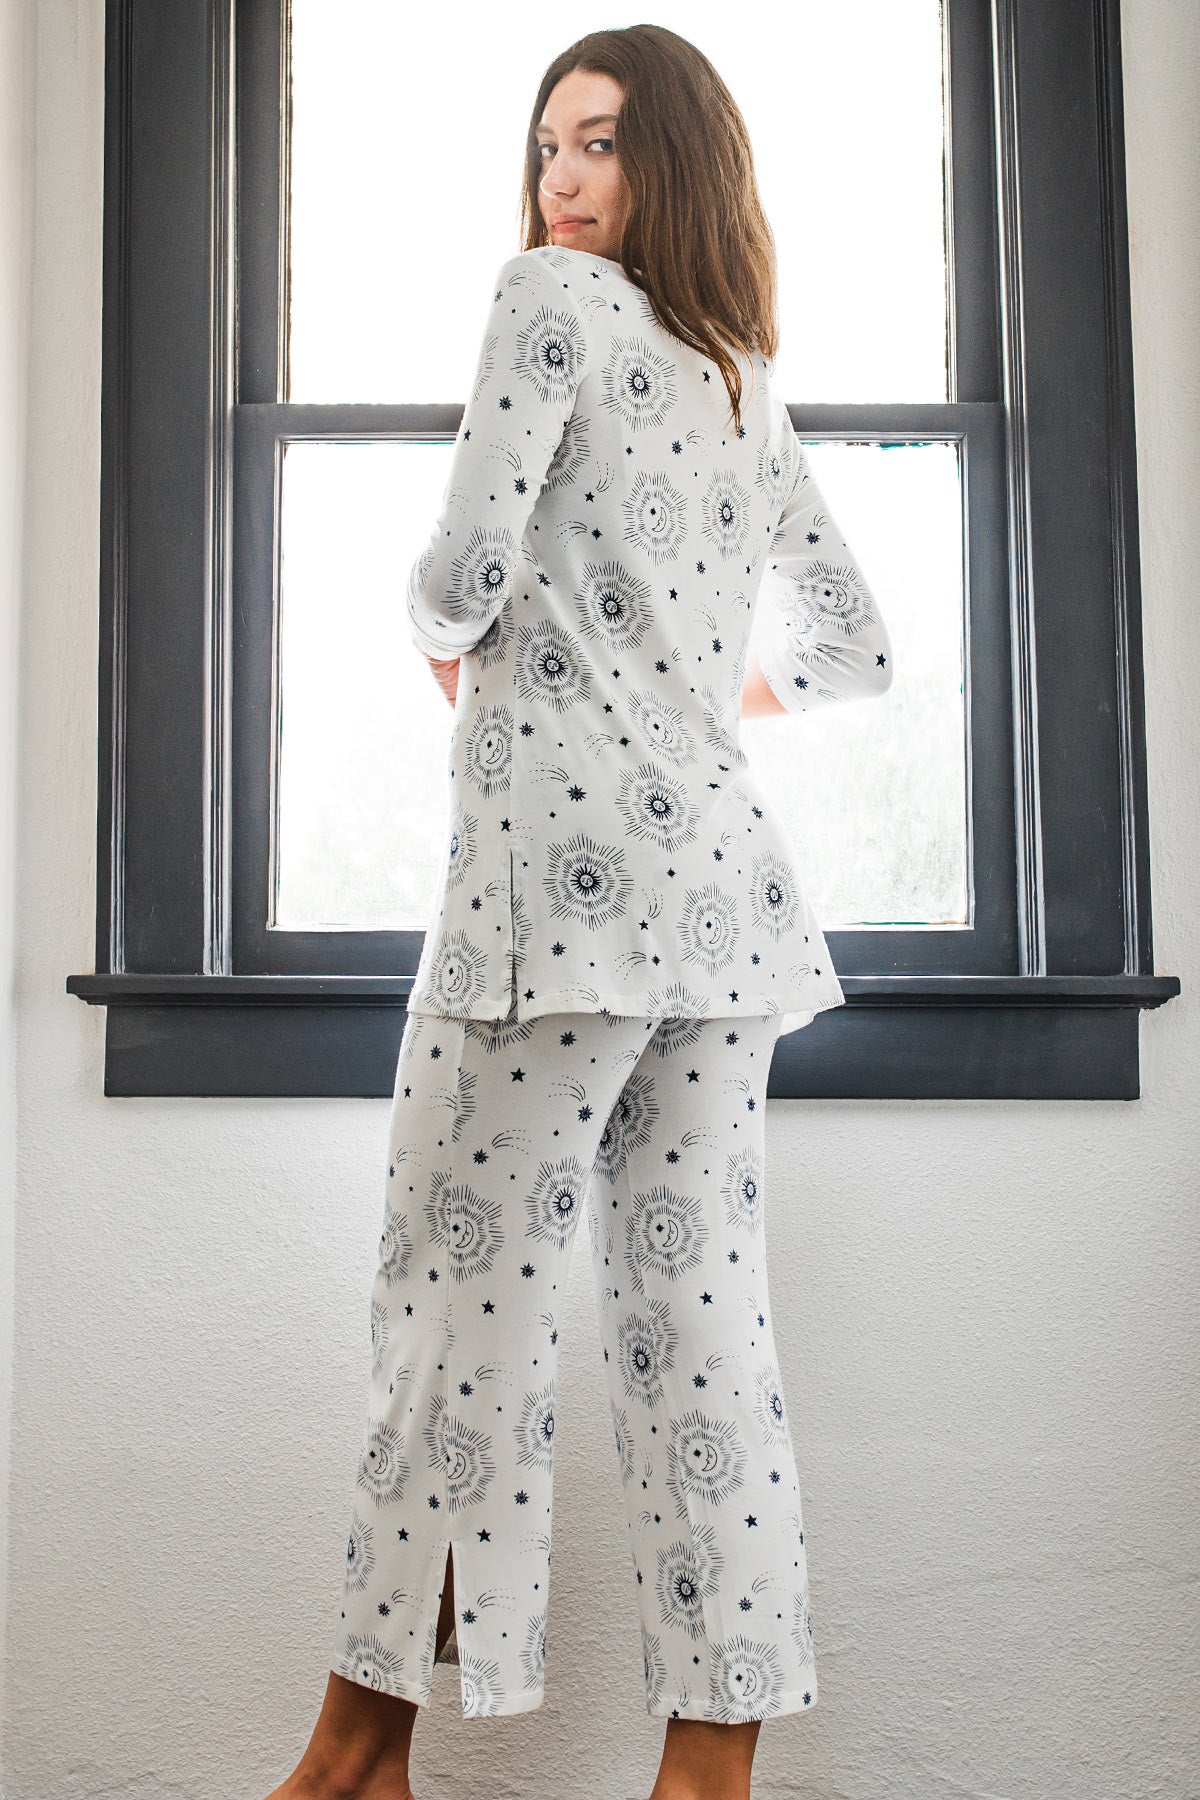 Haley Bamboo Women's Pajamas by YALA